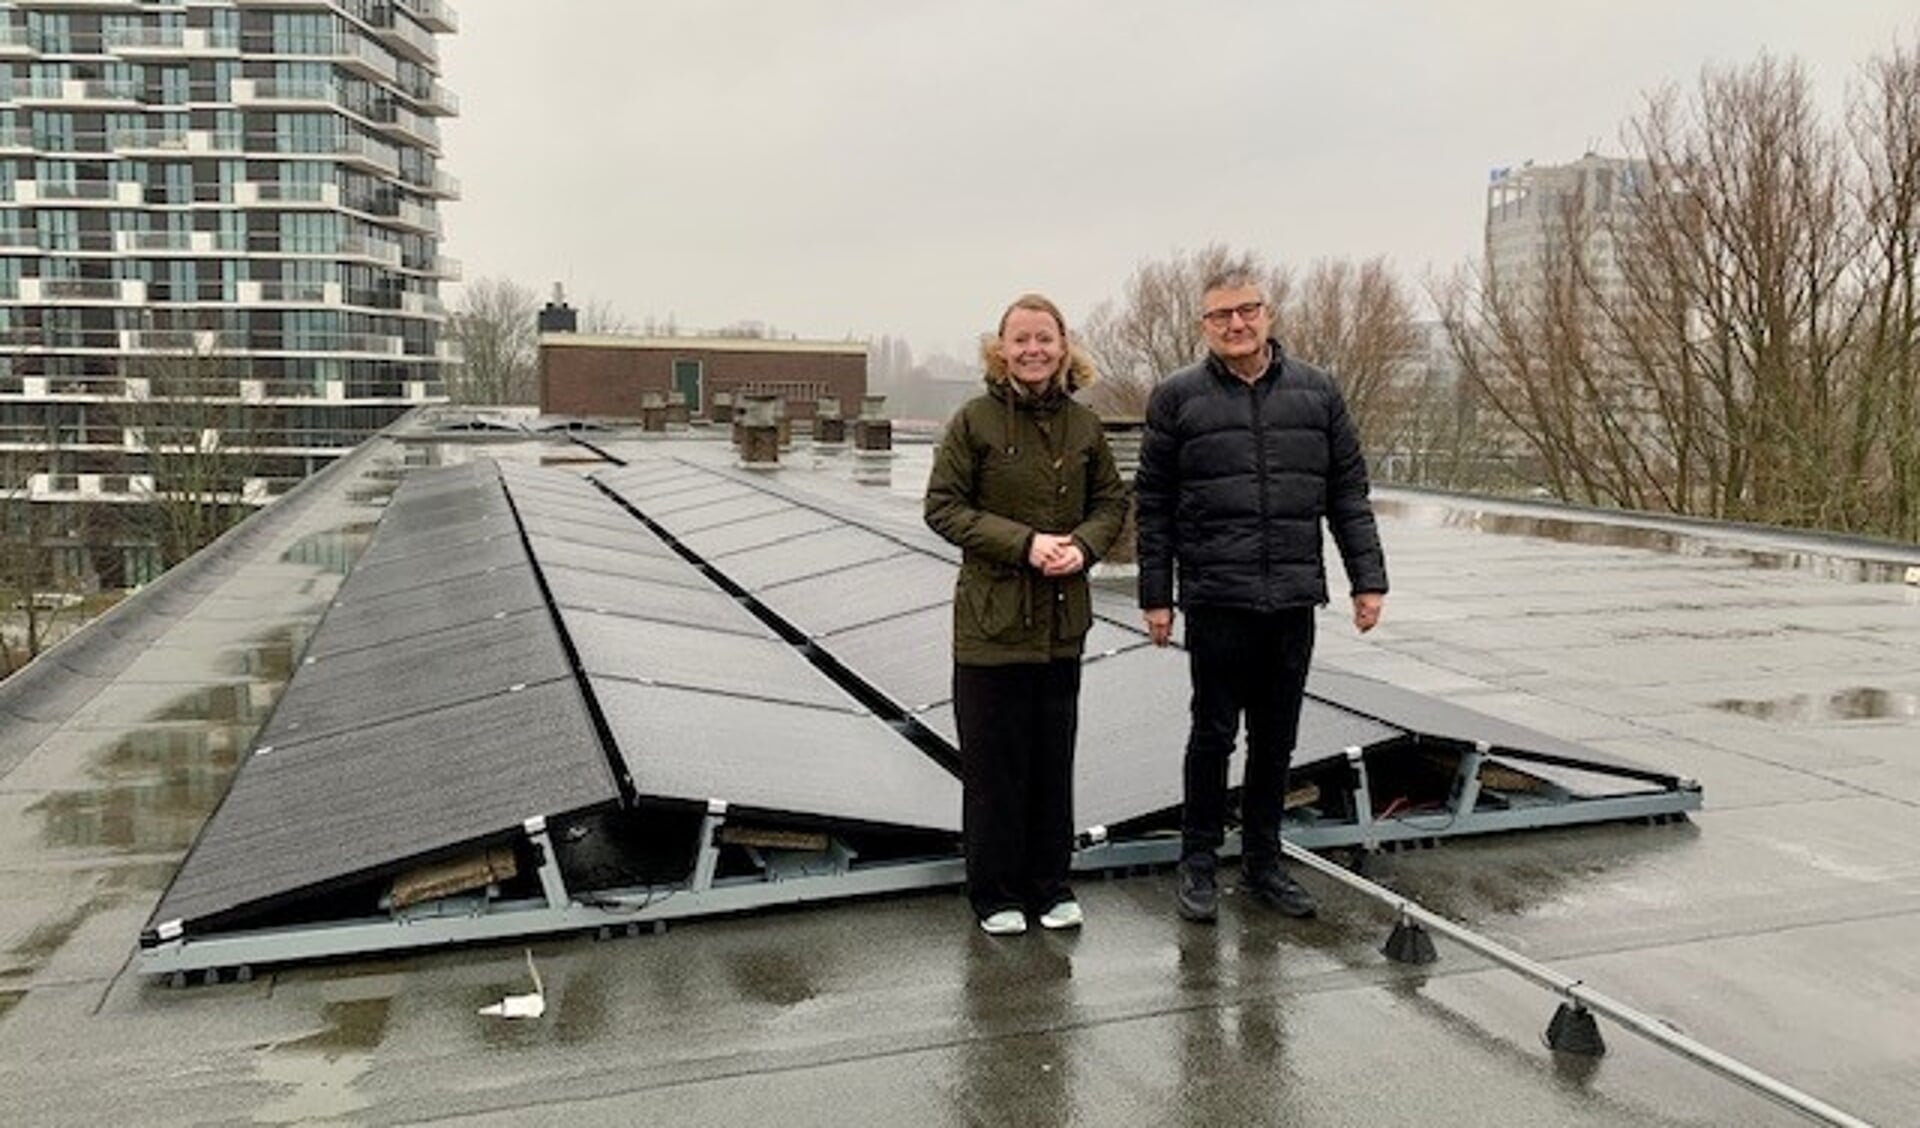 Wethouder Floor Gordon met Wouter Simonis (bestuurslid VvE Biesbosch) bij de zonnepanelen op het dak van het appartementencomplex.